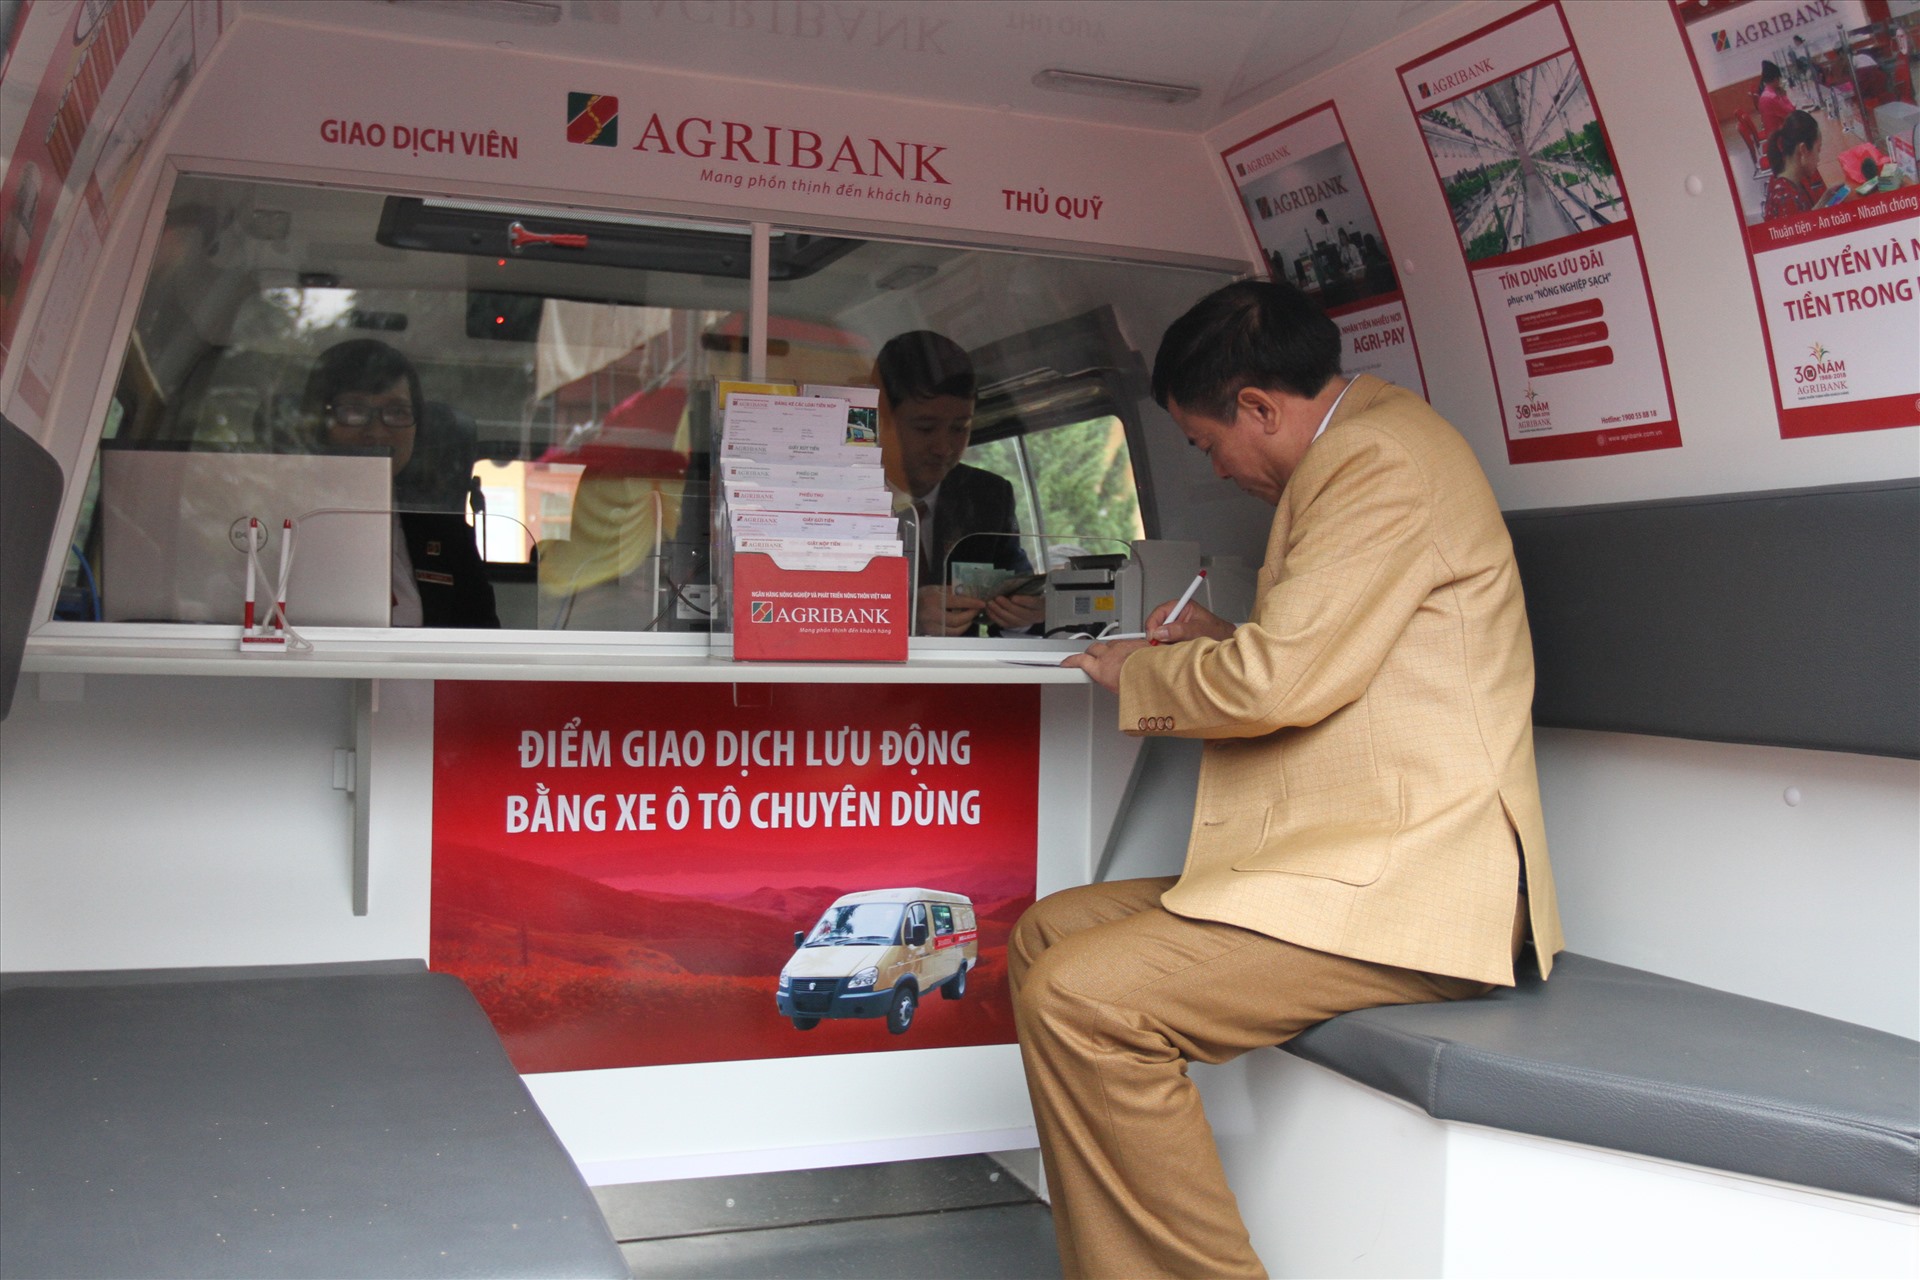 Điểm giao dịch lưu động bằng xe ô tô chuyên dùng của Agribank - “Ngân hàng lưu động” của người dân tại các điểm vùng sâu, vùng xa